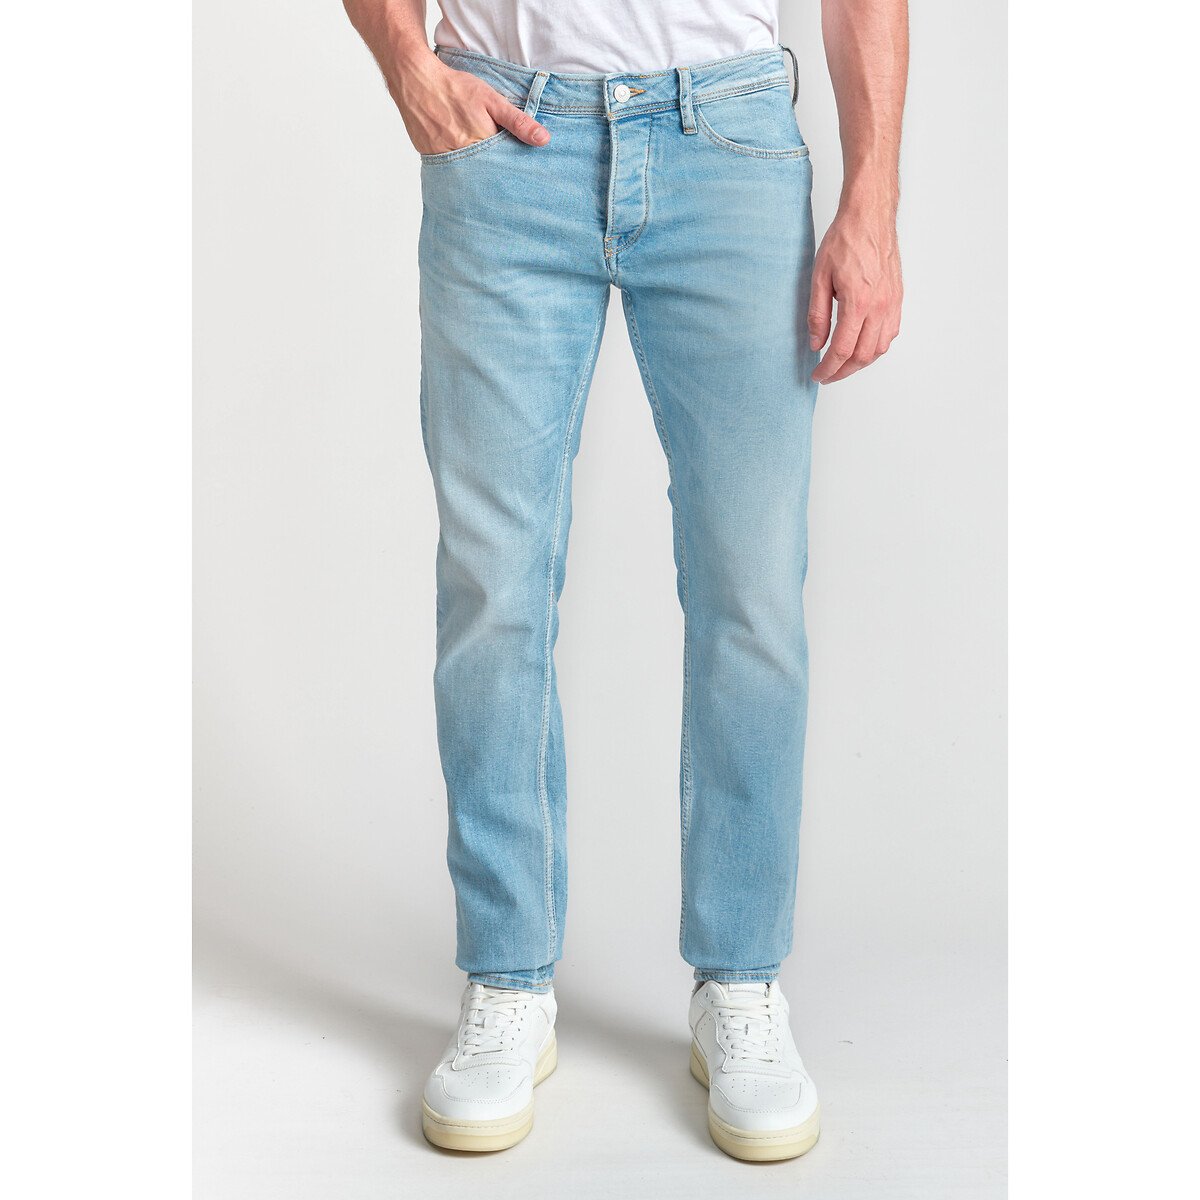 мужские зауженные джинсы laredoute, синие